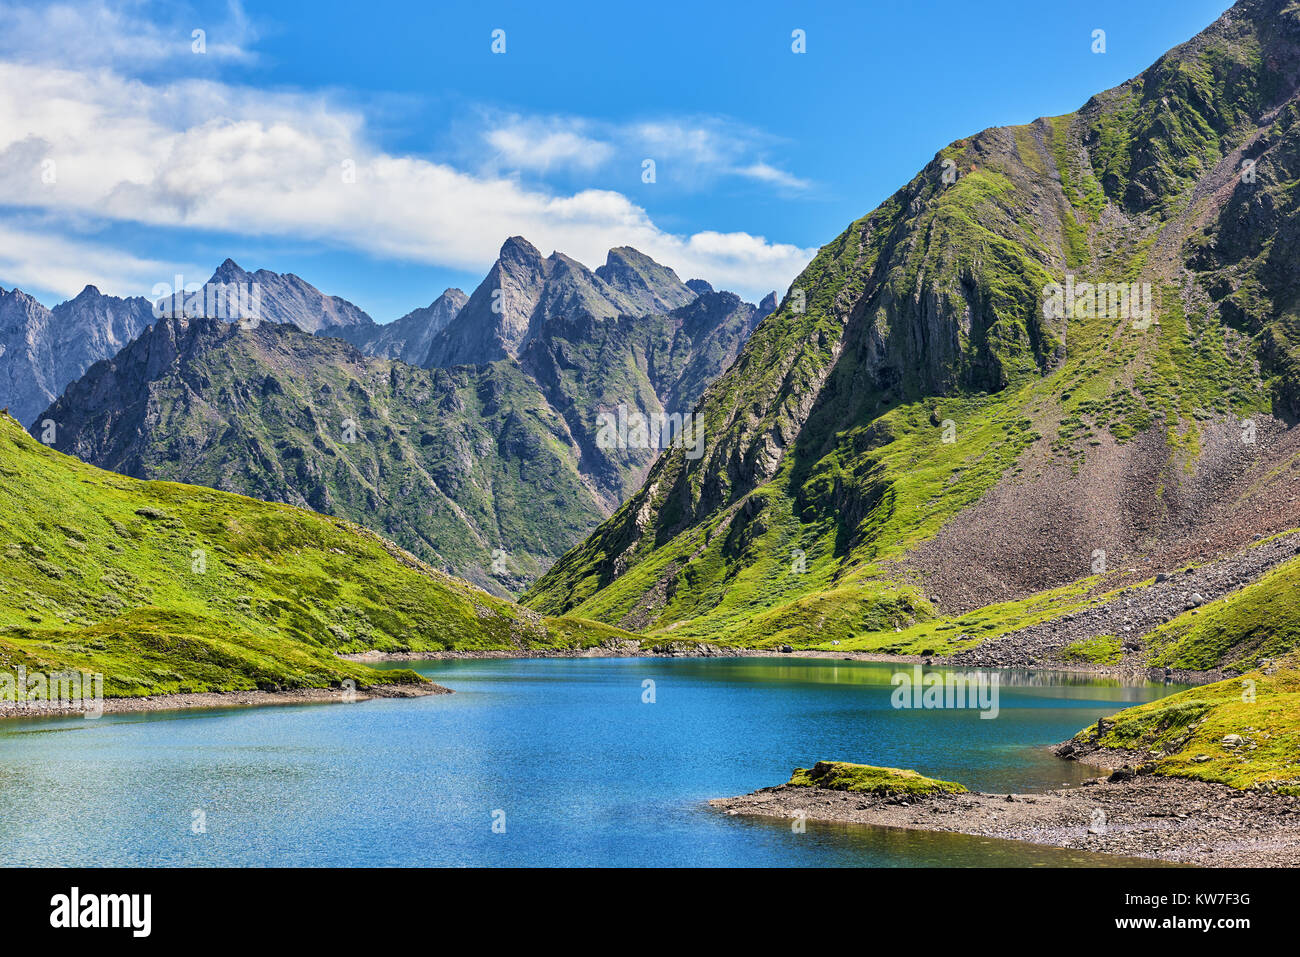 Lac de montagne dans la toundra alpine de hautes terres de Sibérie. Journée ensoleillée en juillet. Orient Sayan. La Russie Banque D'Images